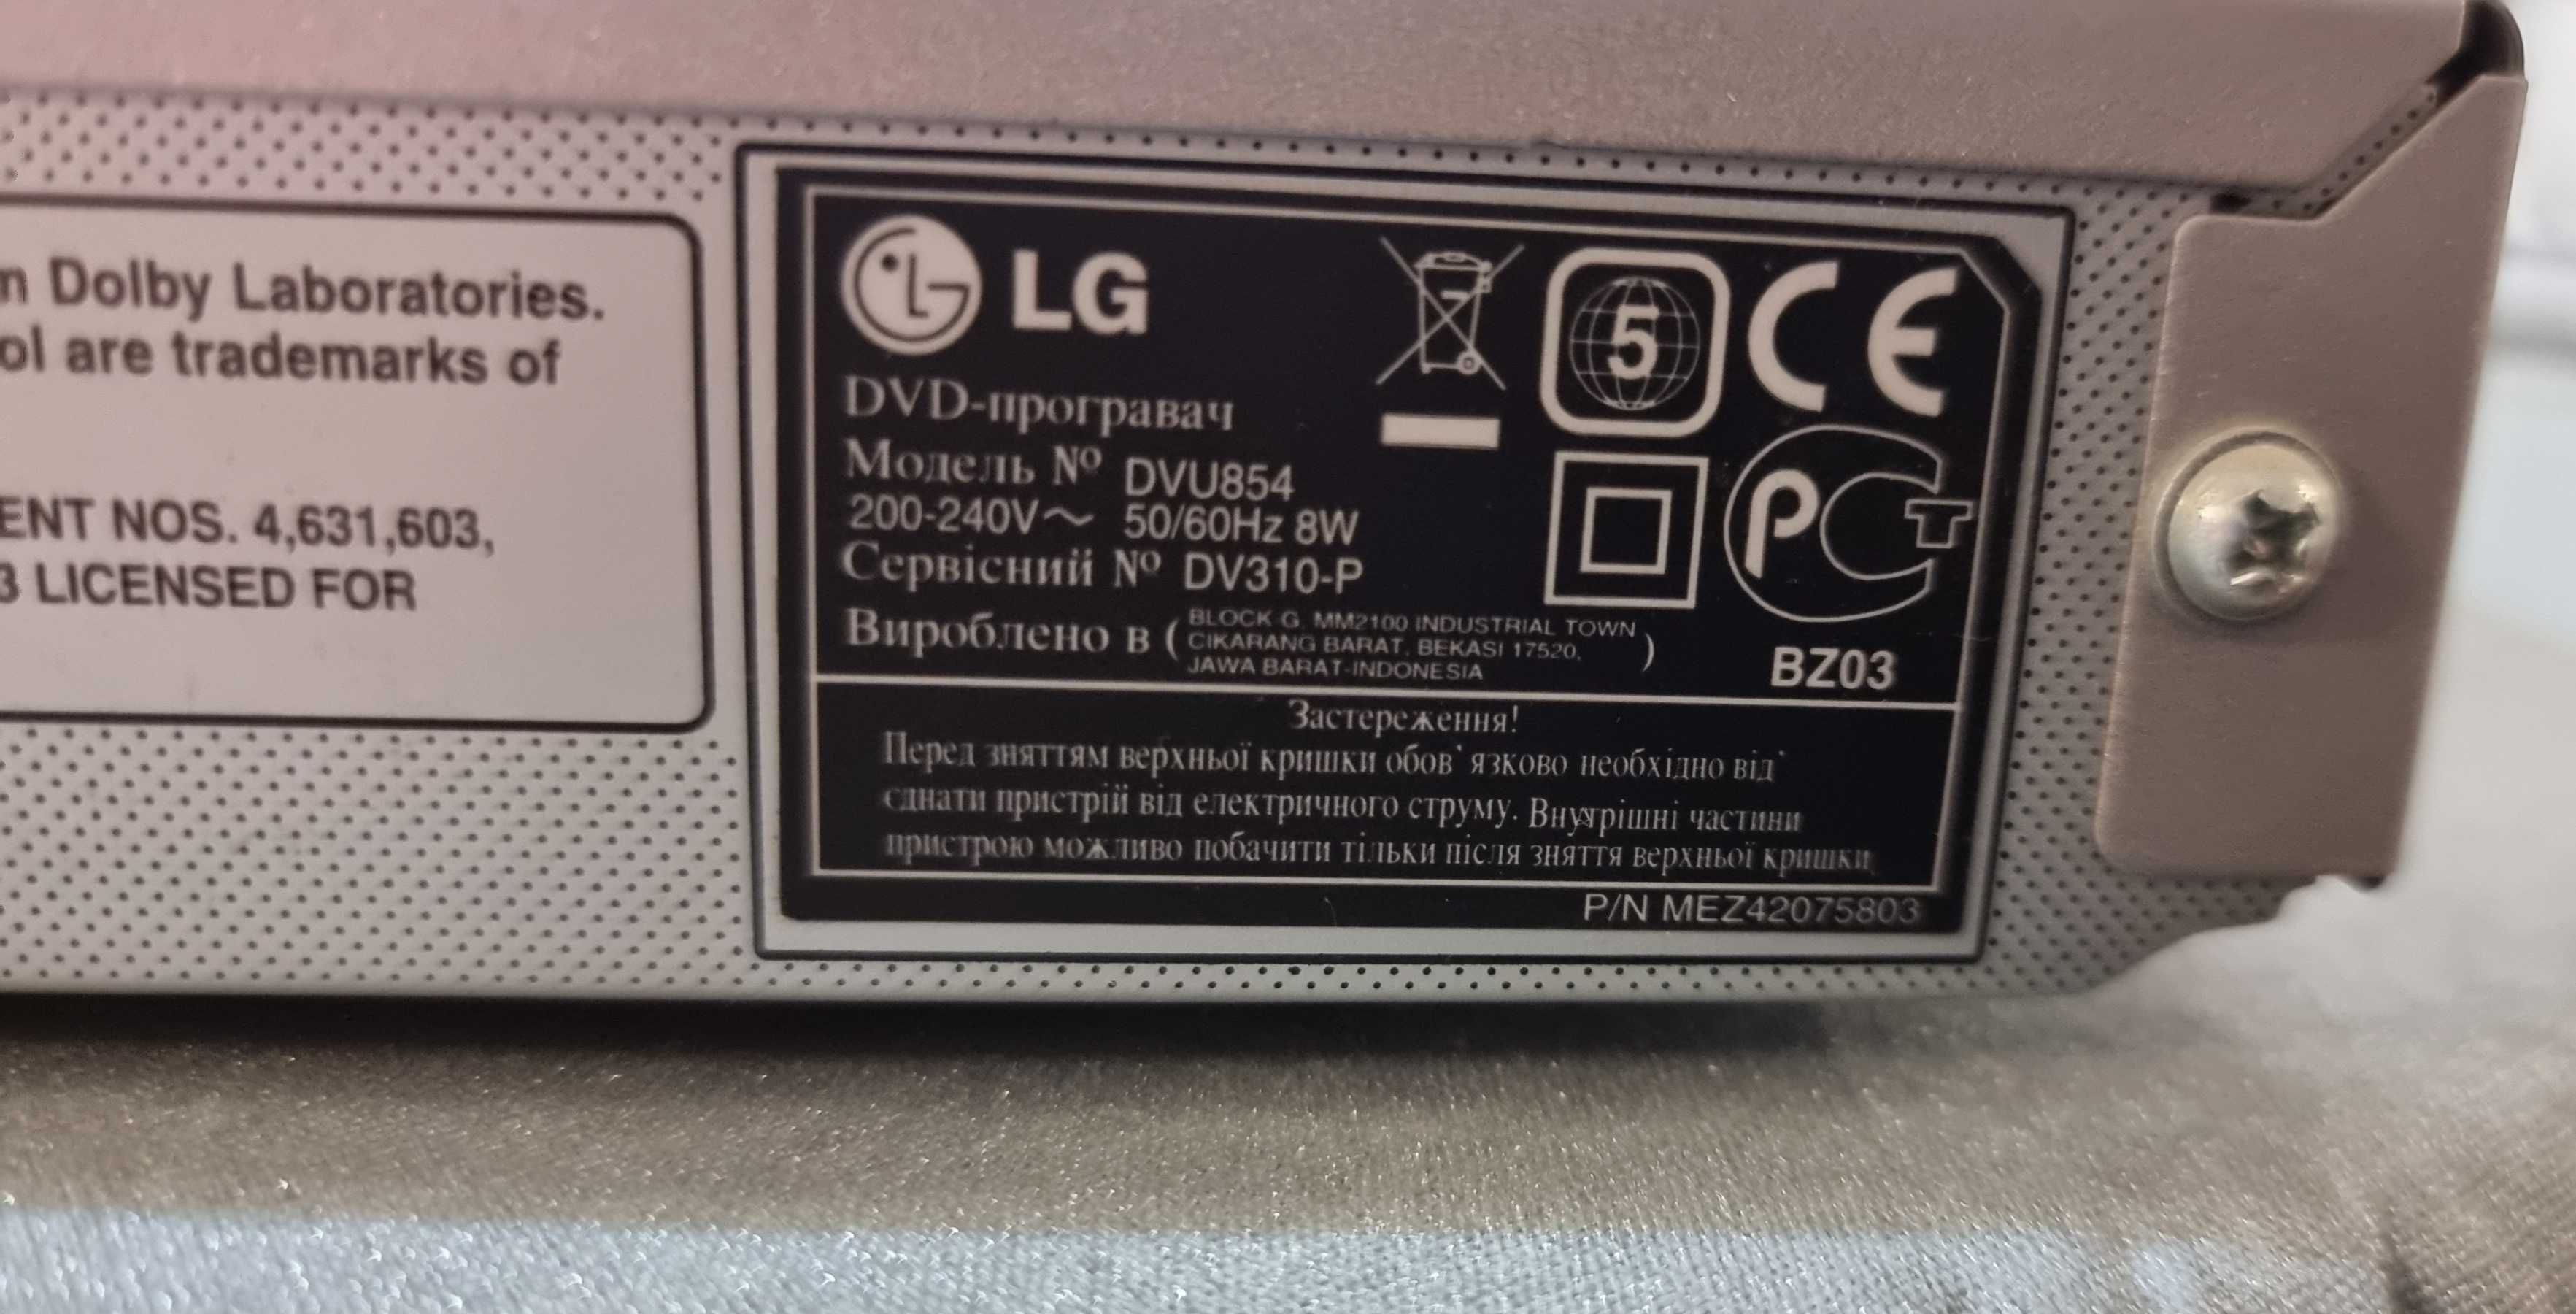 DVD проигрыватель LG DVU 854 б/у в отл.сост. + диски в подарок